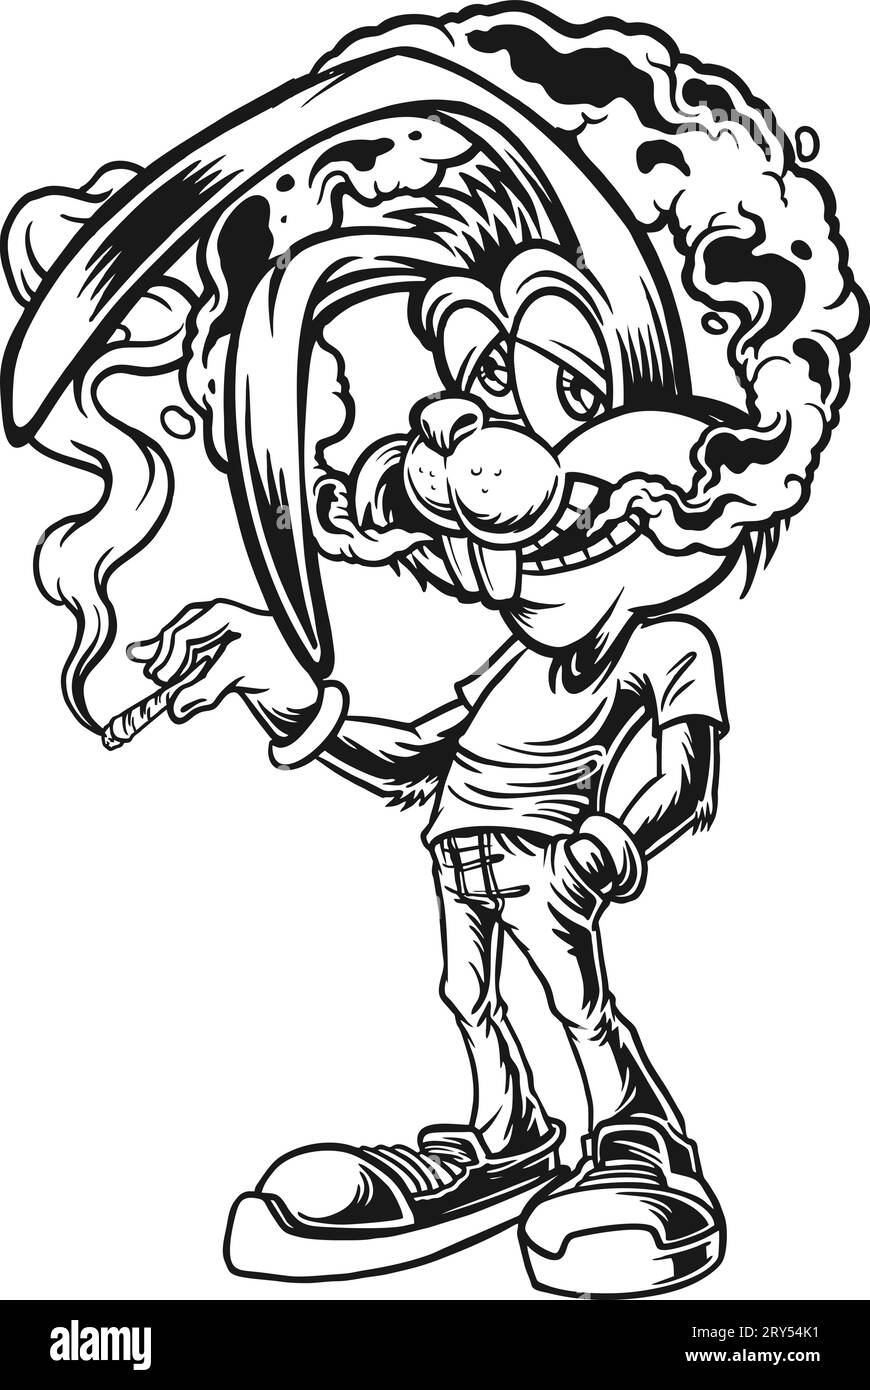 Psychedelic Bunny Mind Blowing Smoke Weed Outline Vektor Illustrationen für Ihr Firmenlogo, Merchandise-T-Shirt, Aufkleber und Label Designs, Poster, gr Stock Vektor